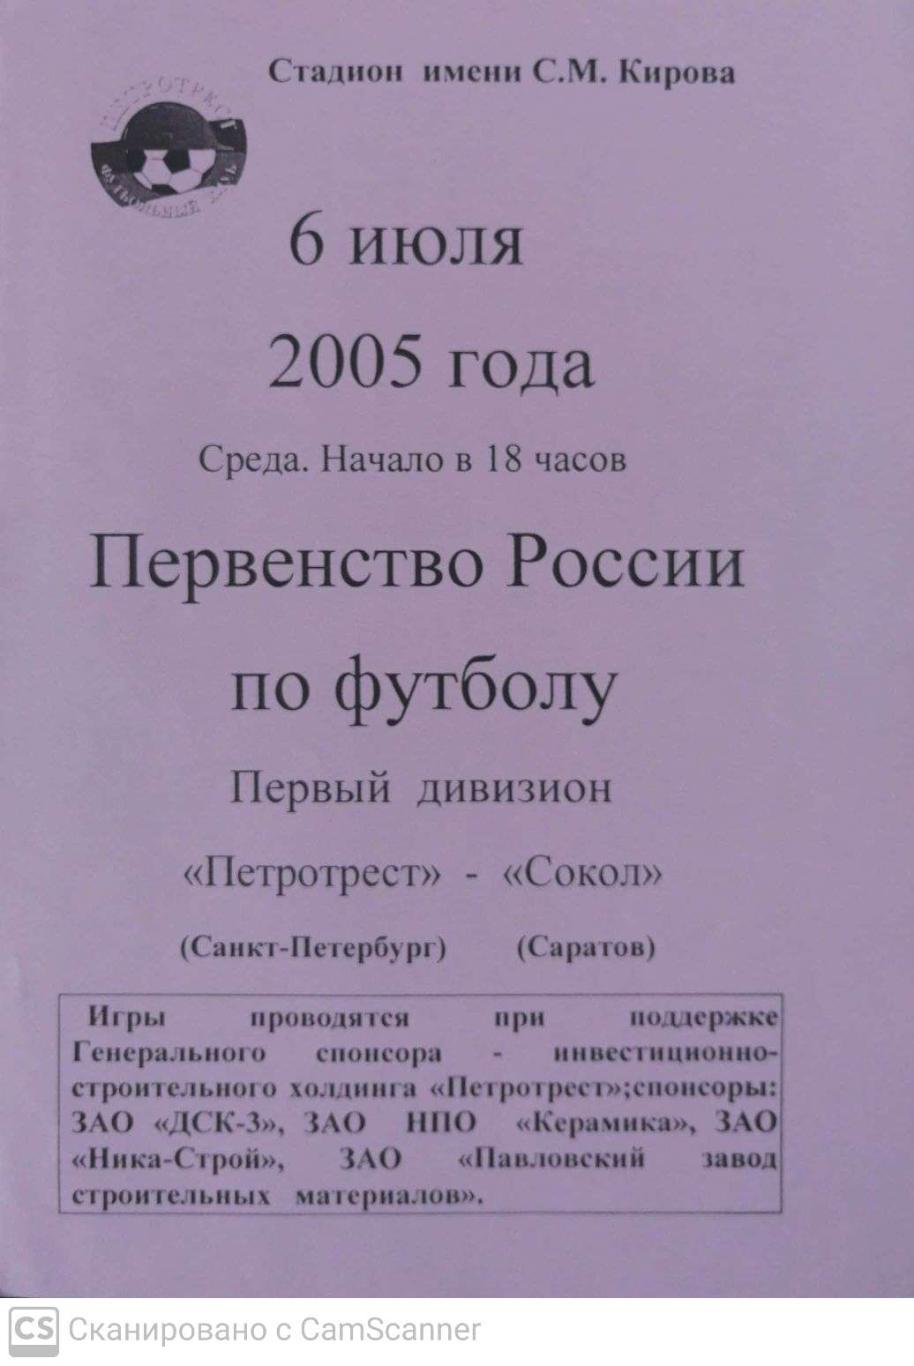 Первый дивизион. Петротрест СПб - Сокол Саратов 6.07.2005